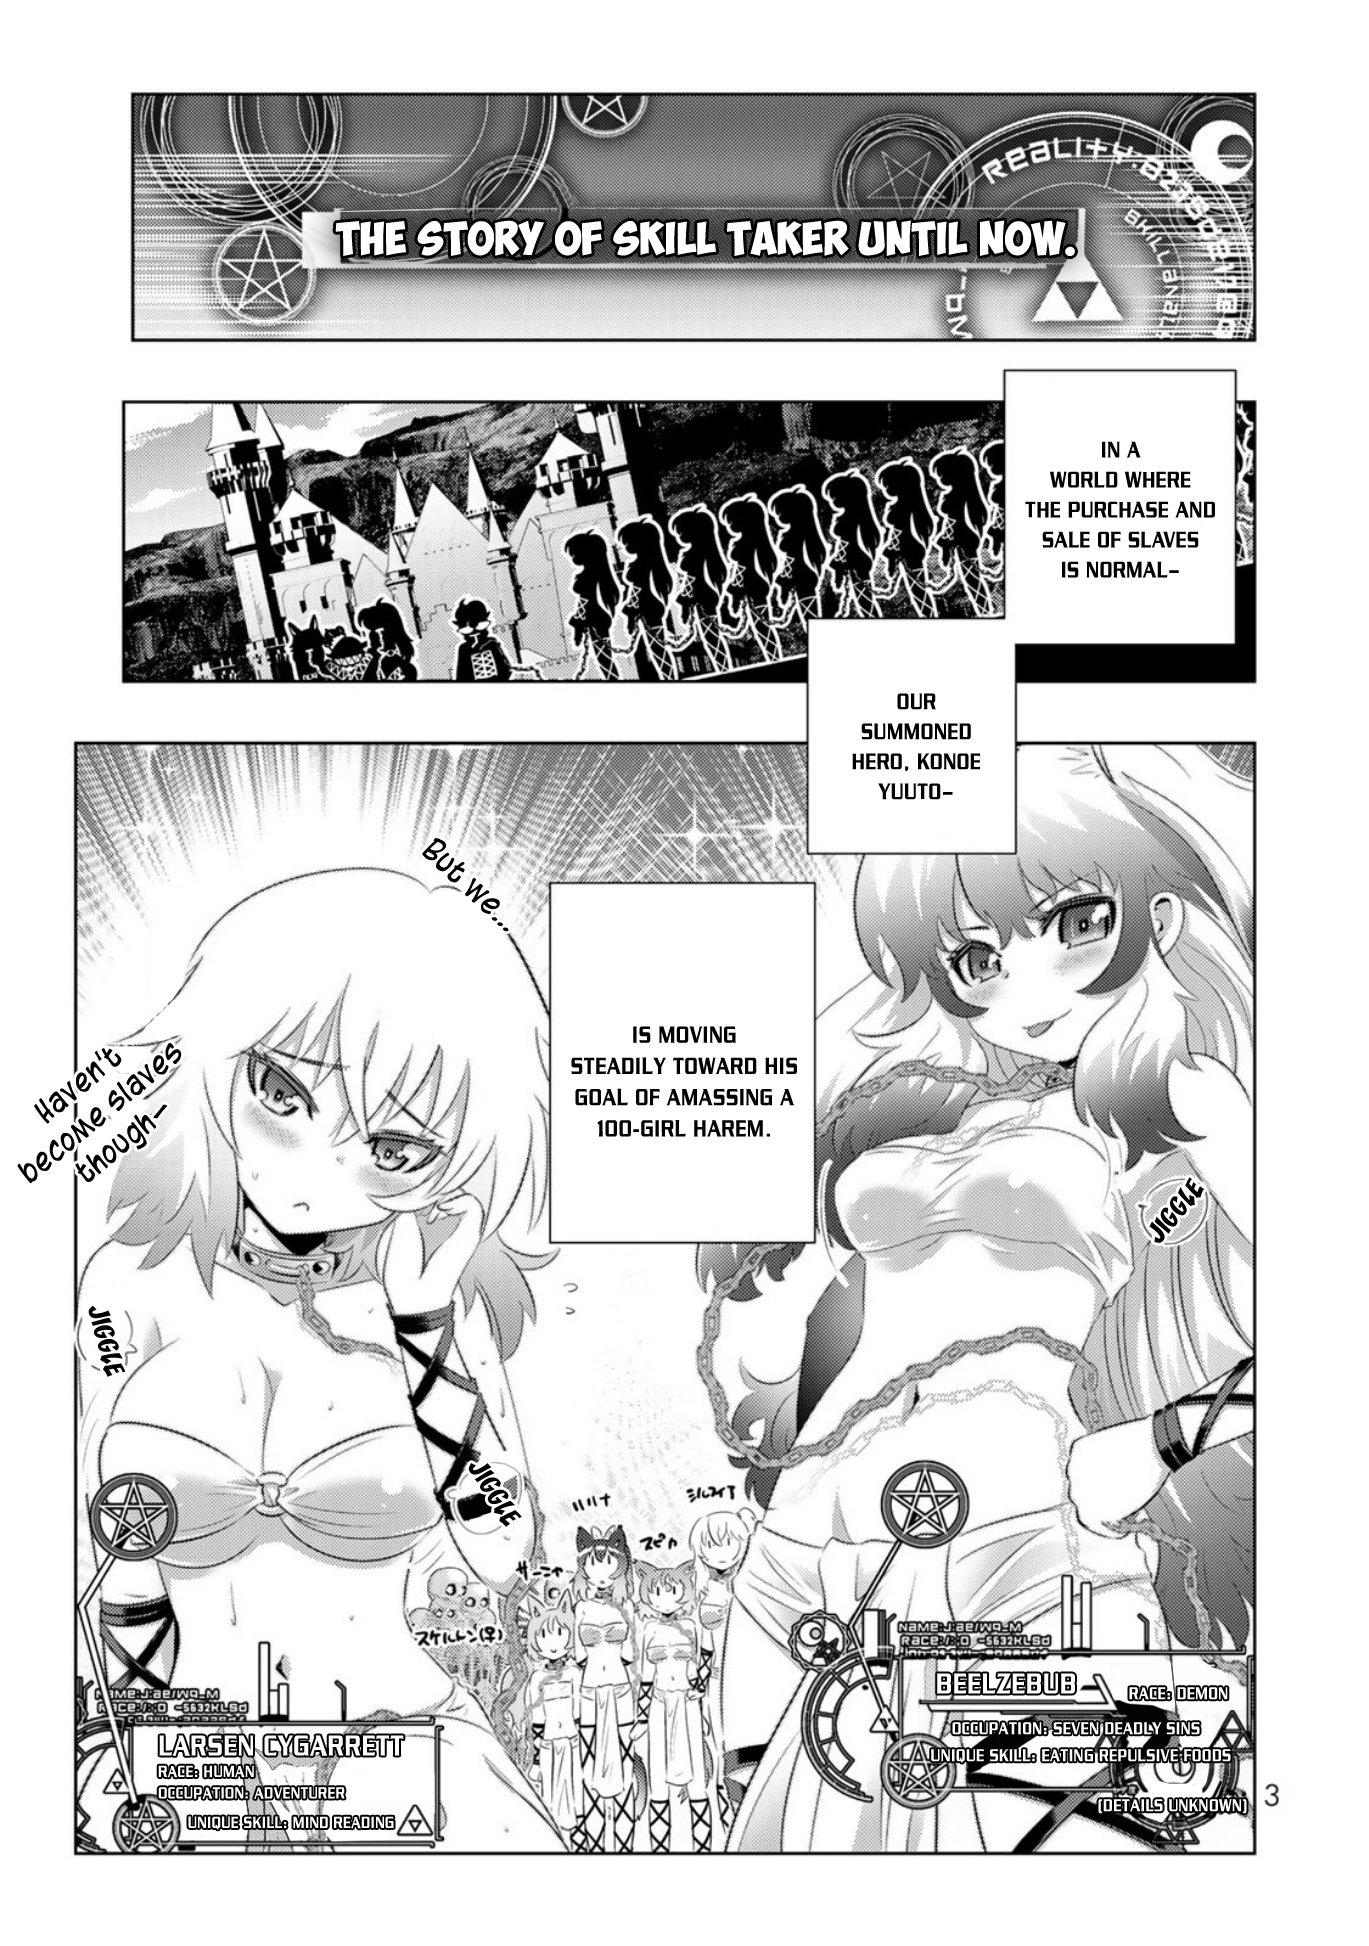 Isekai Shihai No Skill Taker: Zero Kara Hajimeru Dorei Harem - Page 2